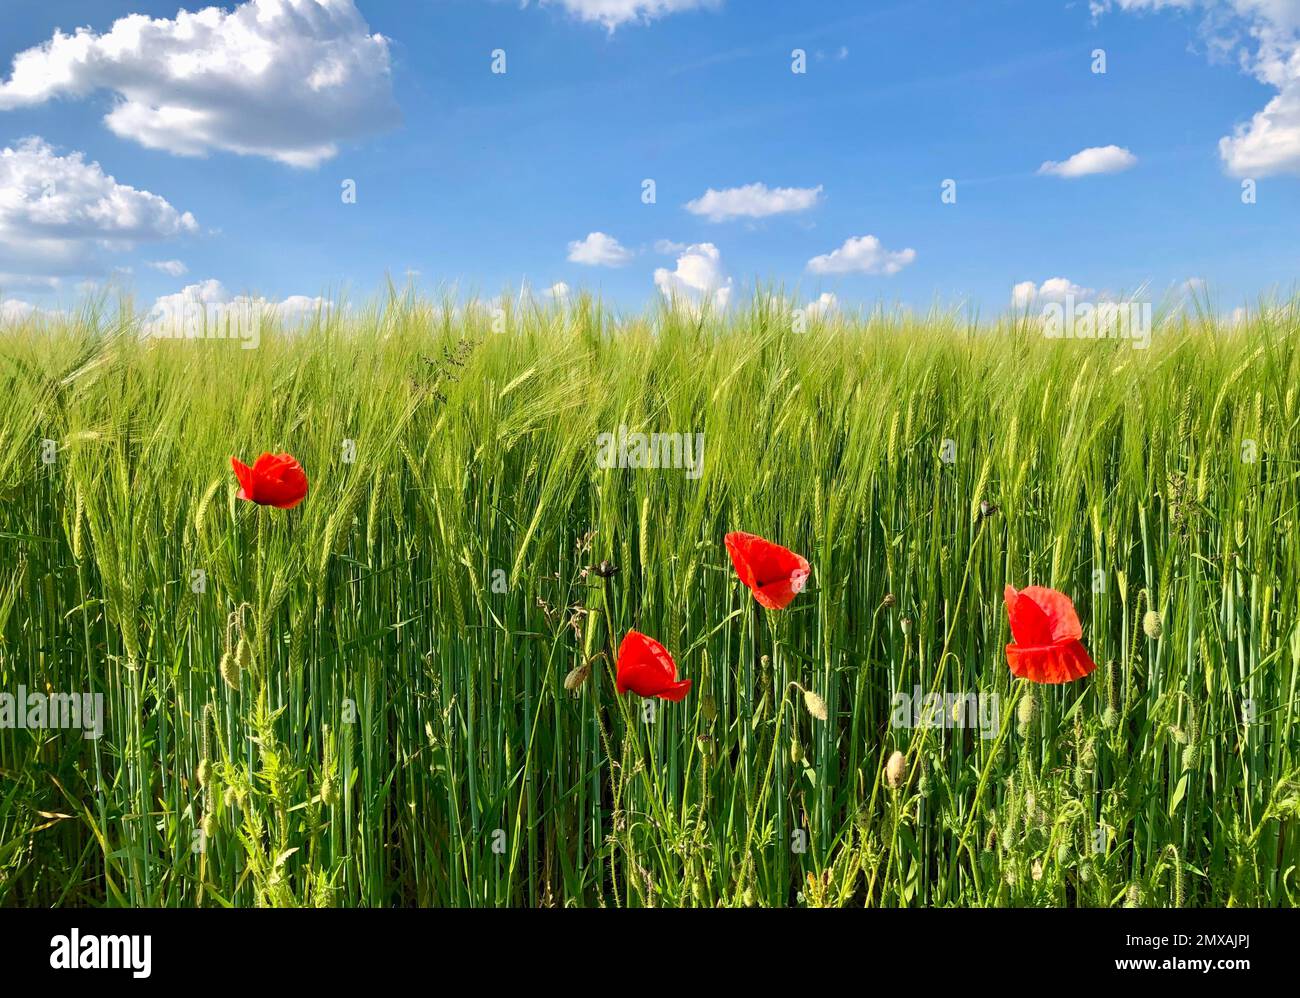 Amapolas rojas en el borde de un campo de maíz, Baviera, Alemania Foto de stock